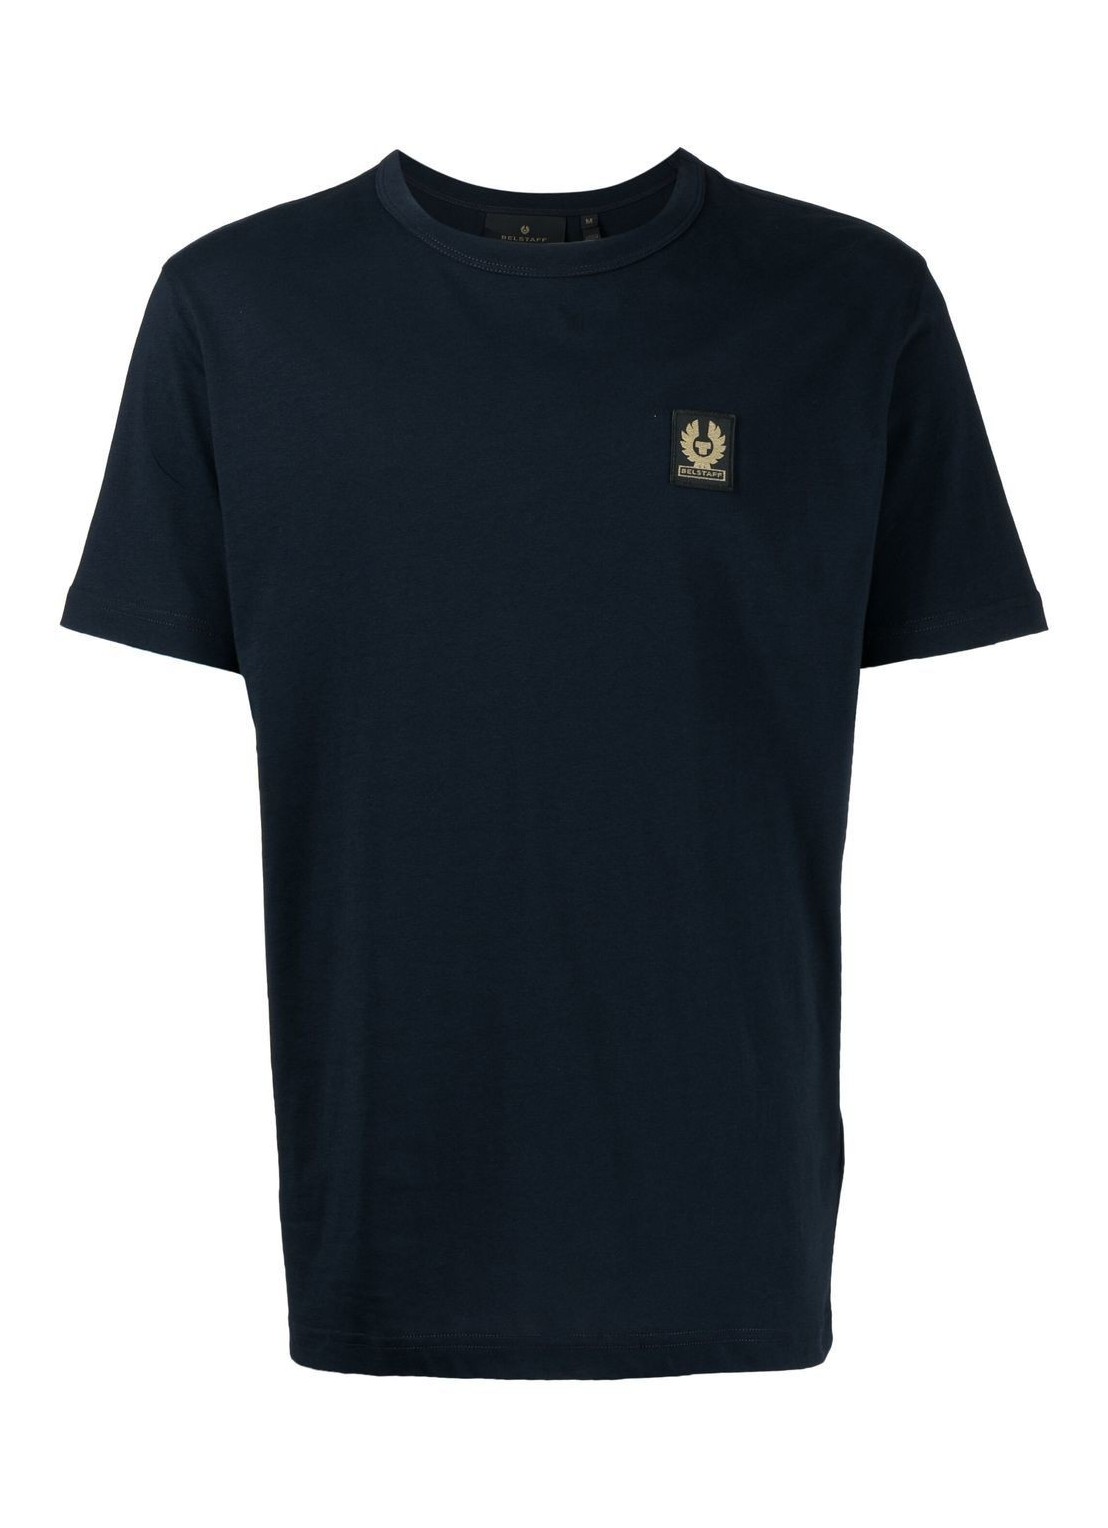 Camiseta belstaff t-shirt man belstaff t-shirt 100055 dkink talla negro
 